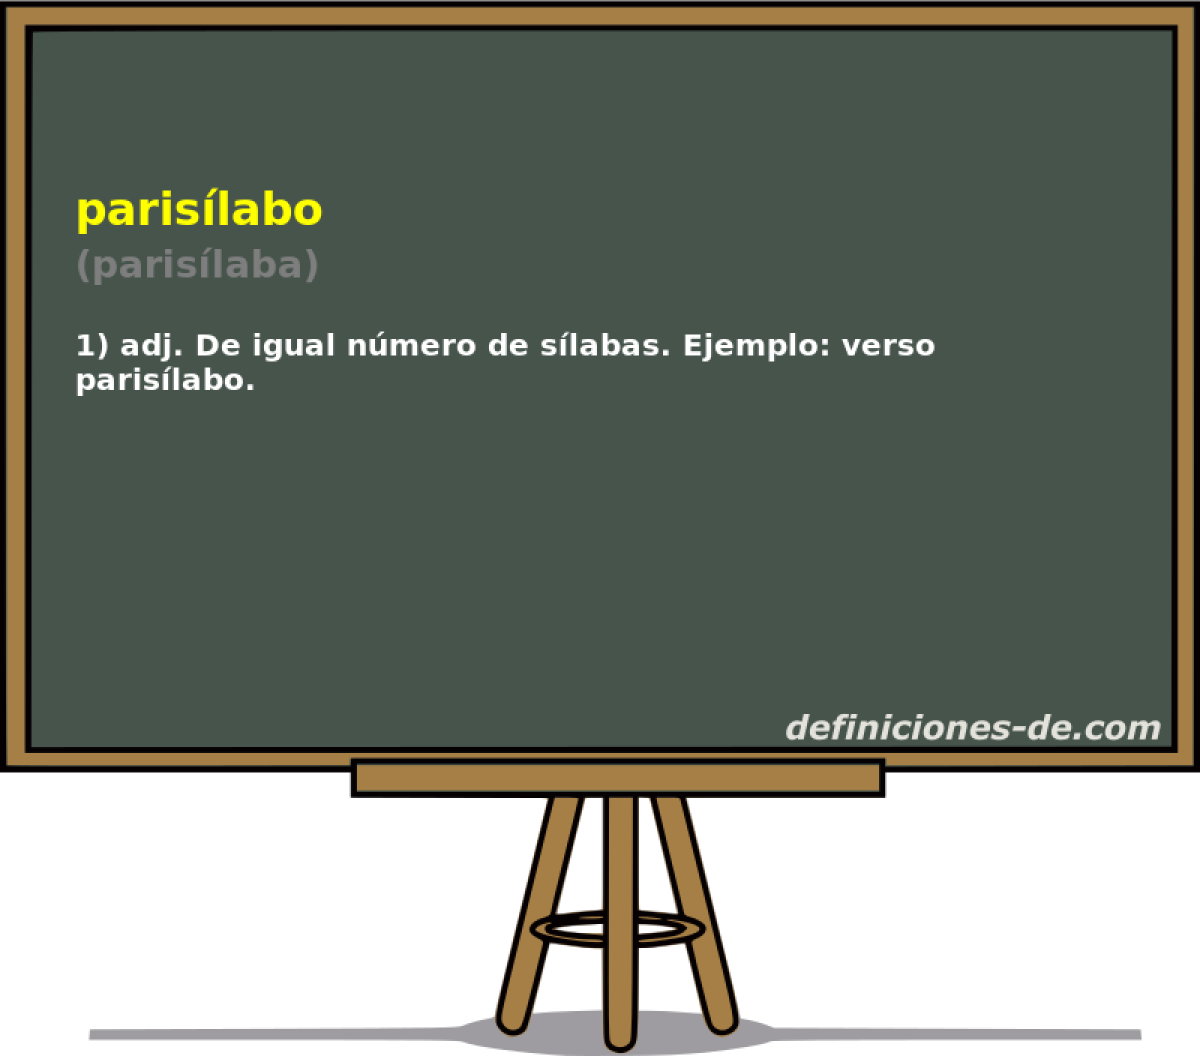 parislabo (parislaba)